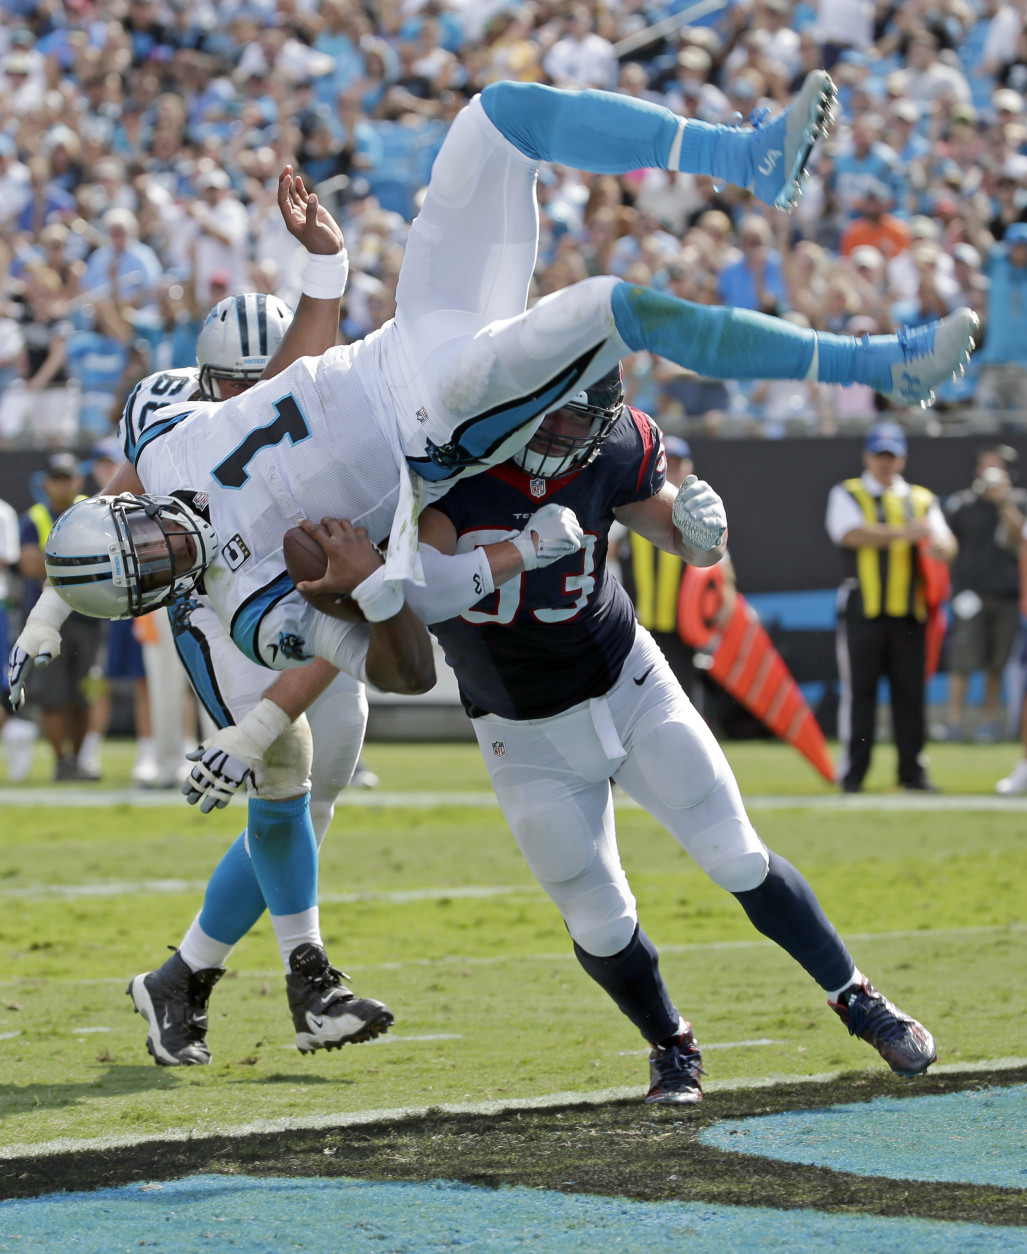 Cam Newton, de los Panthers de Carolina, salta por encima de Jared Crick, de los Texans de Houston, para un touchdown en la segunda mitad del juego del domingo 20 de septiembre de 2015 en Charlotte, North Carolina. (Foto AP/Chuck Burton)